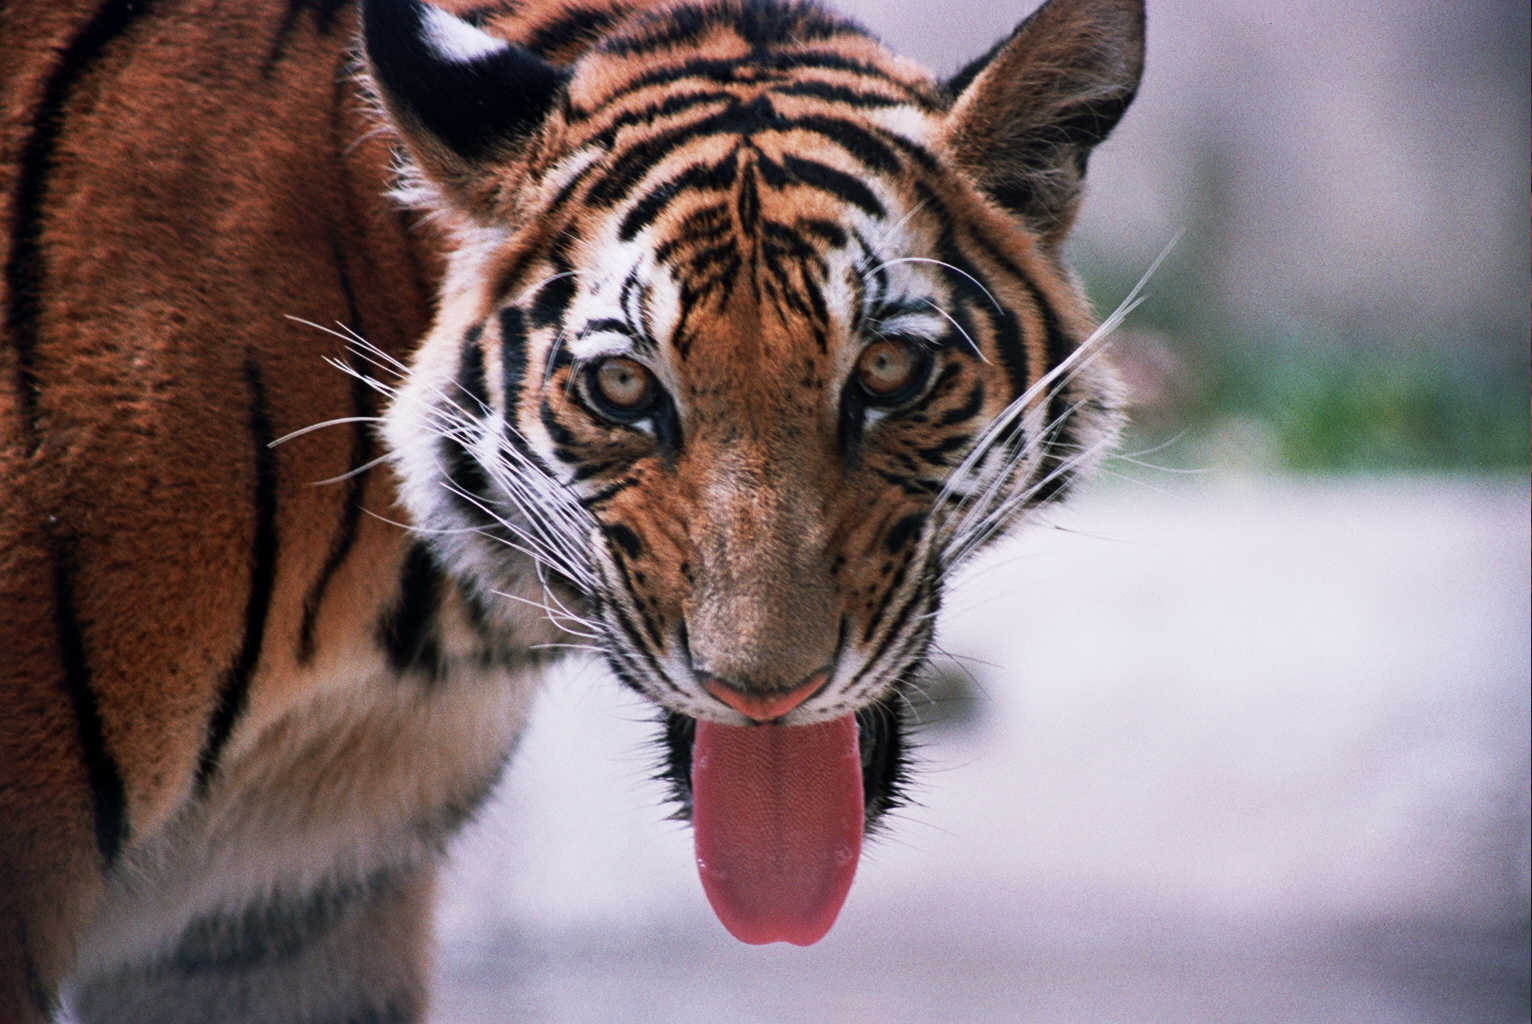 tigers declared extinct - cambodia